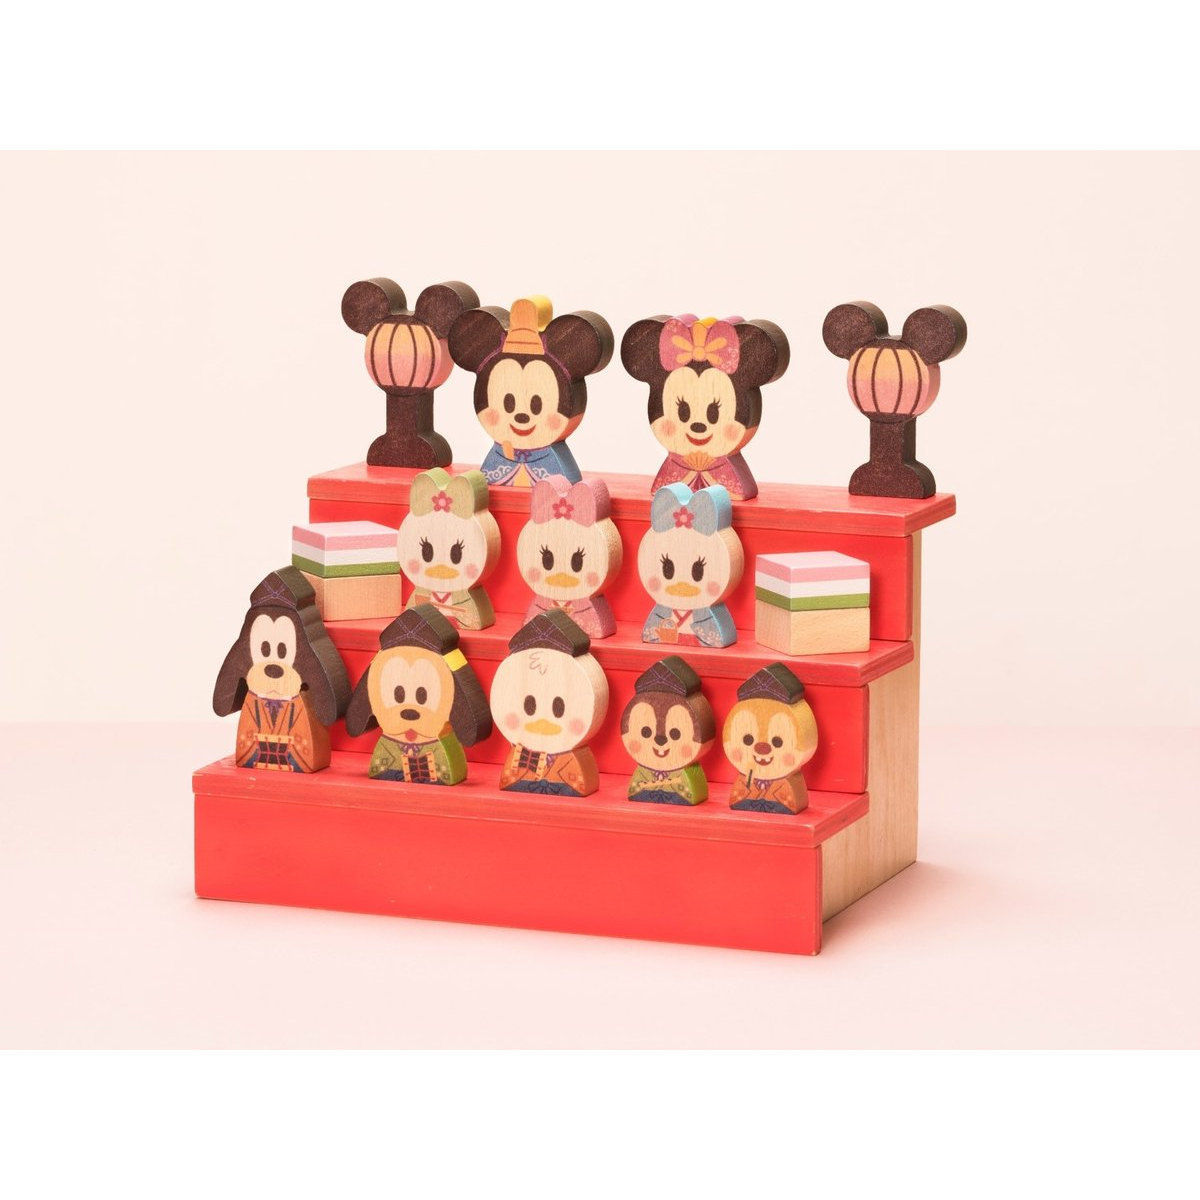 Disney Kidea Block ひなまつり ディズニーキャラクター おもちゃ バンダイナムコグループ公式通販サイト